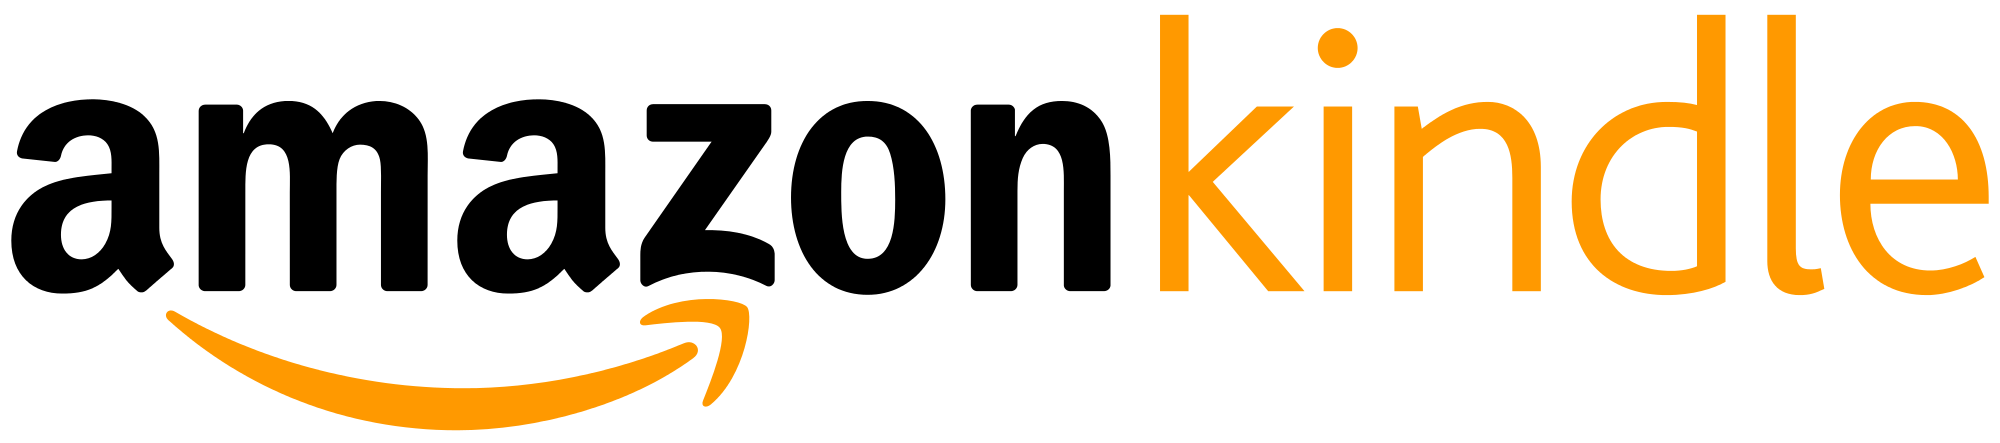 Amazon Kindle Logo Vector PNG - 34823